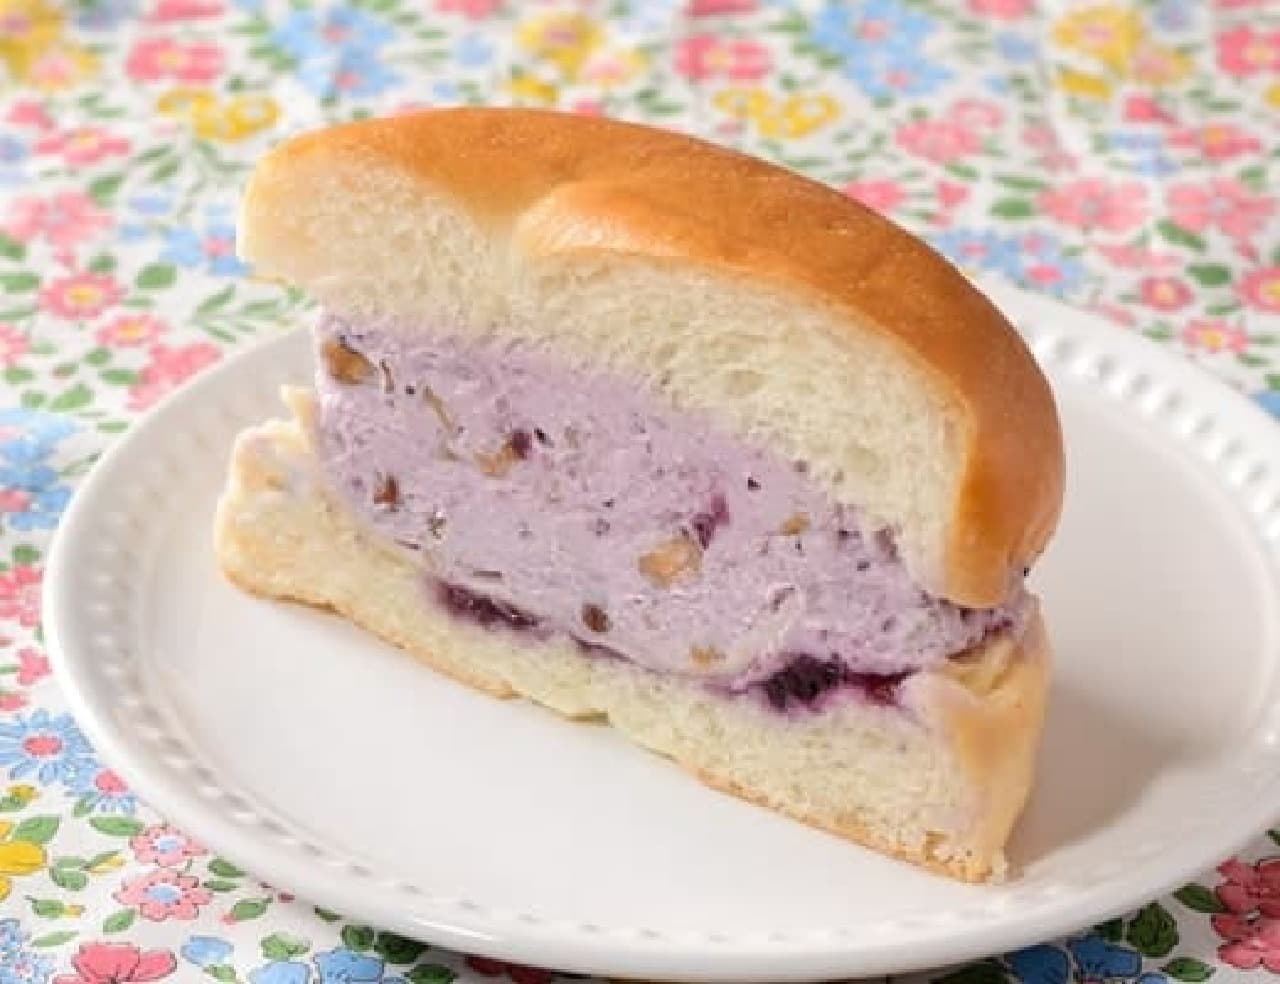 Lawson "Mochi Mochi Bagel Sandwich Blueberry Cream Cheese and Nuts"